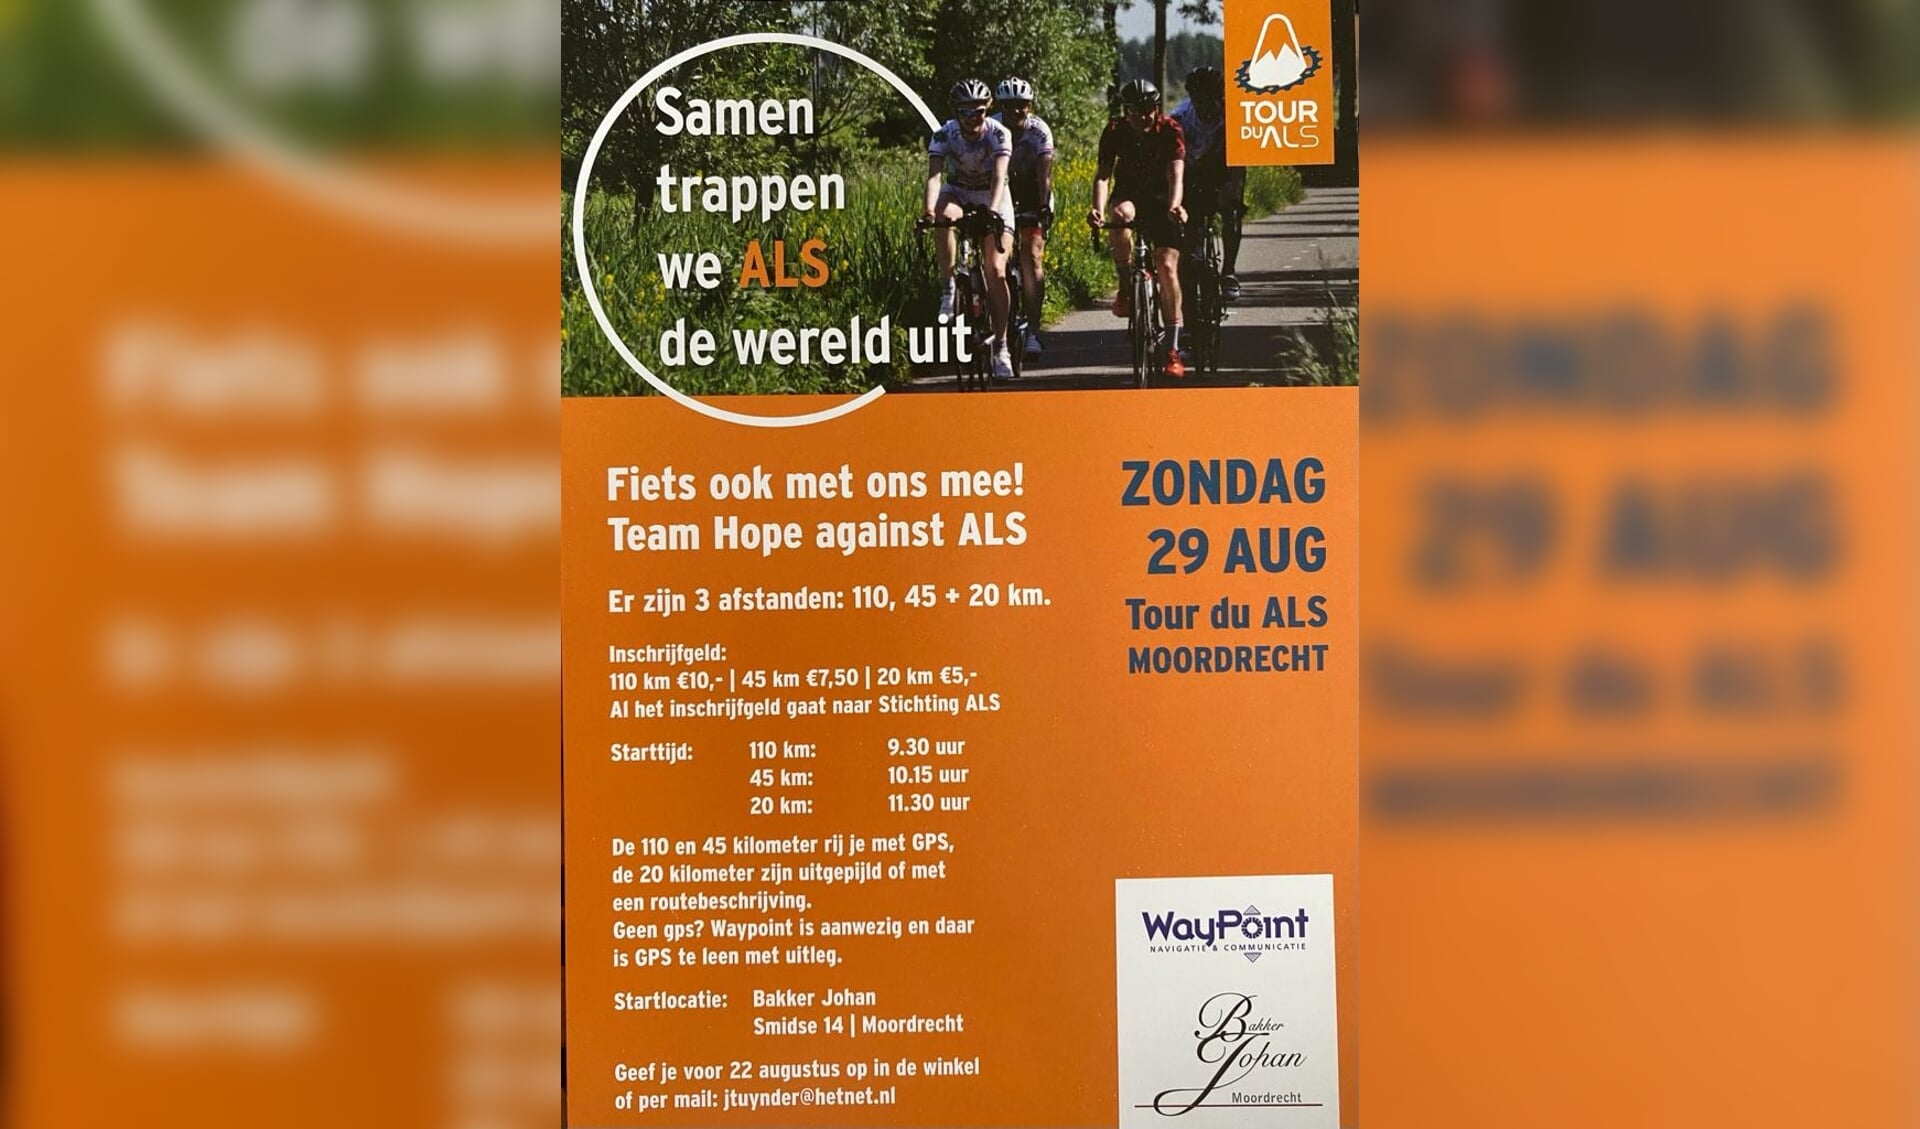 De flyer van de Tour du ALS Moordrecht.